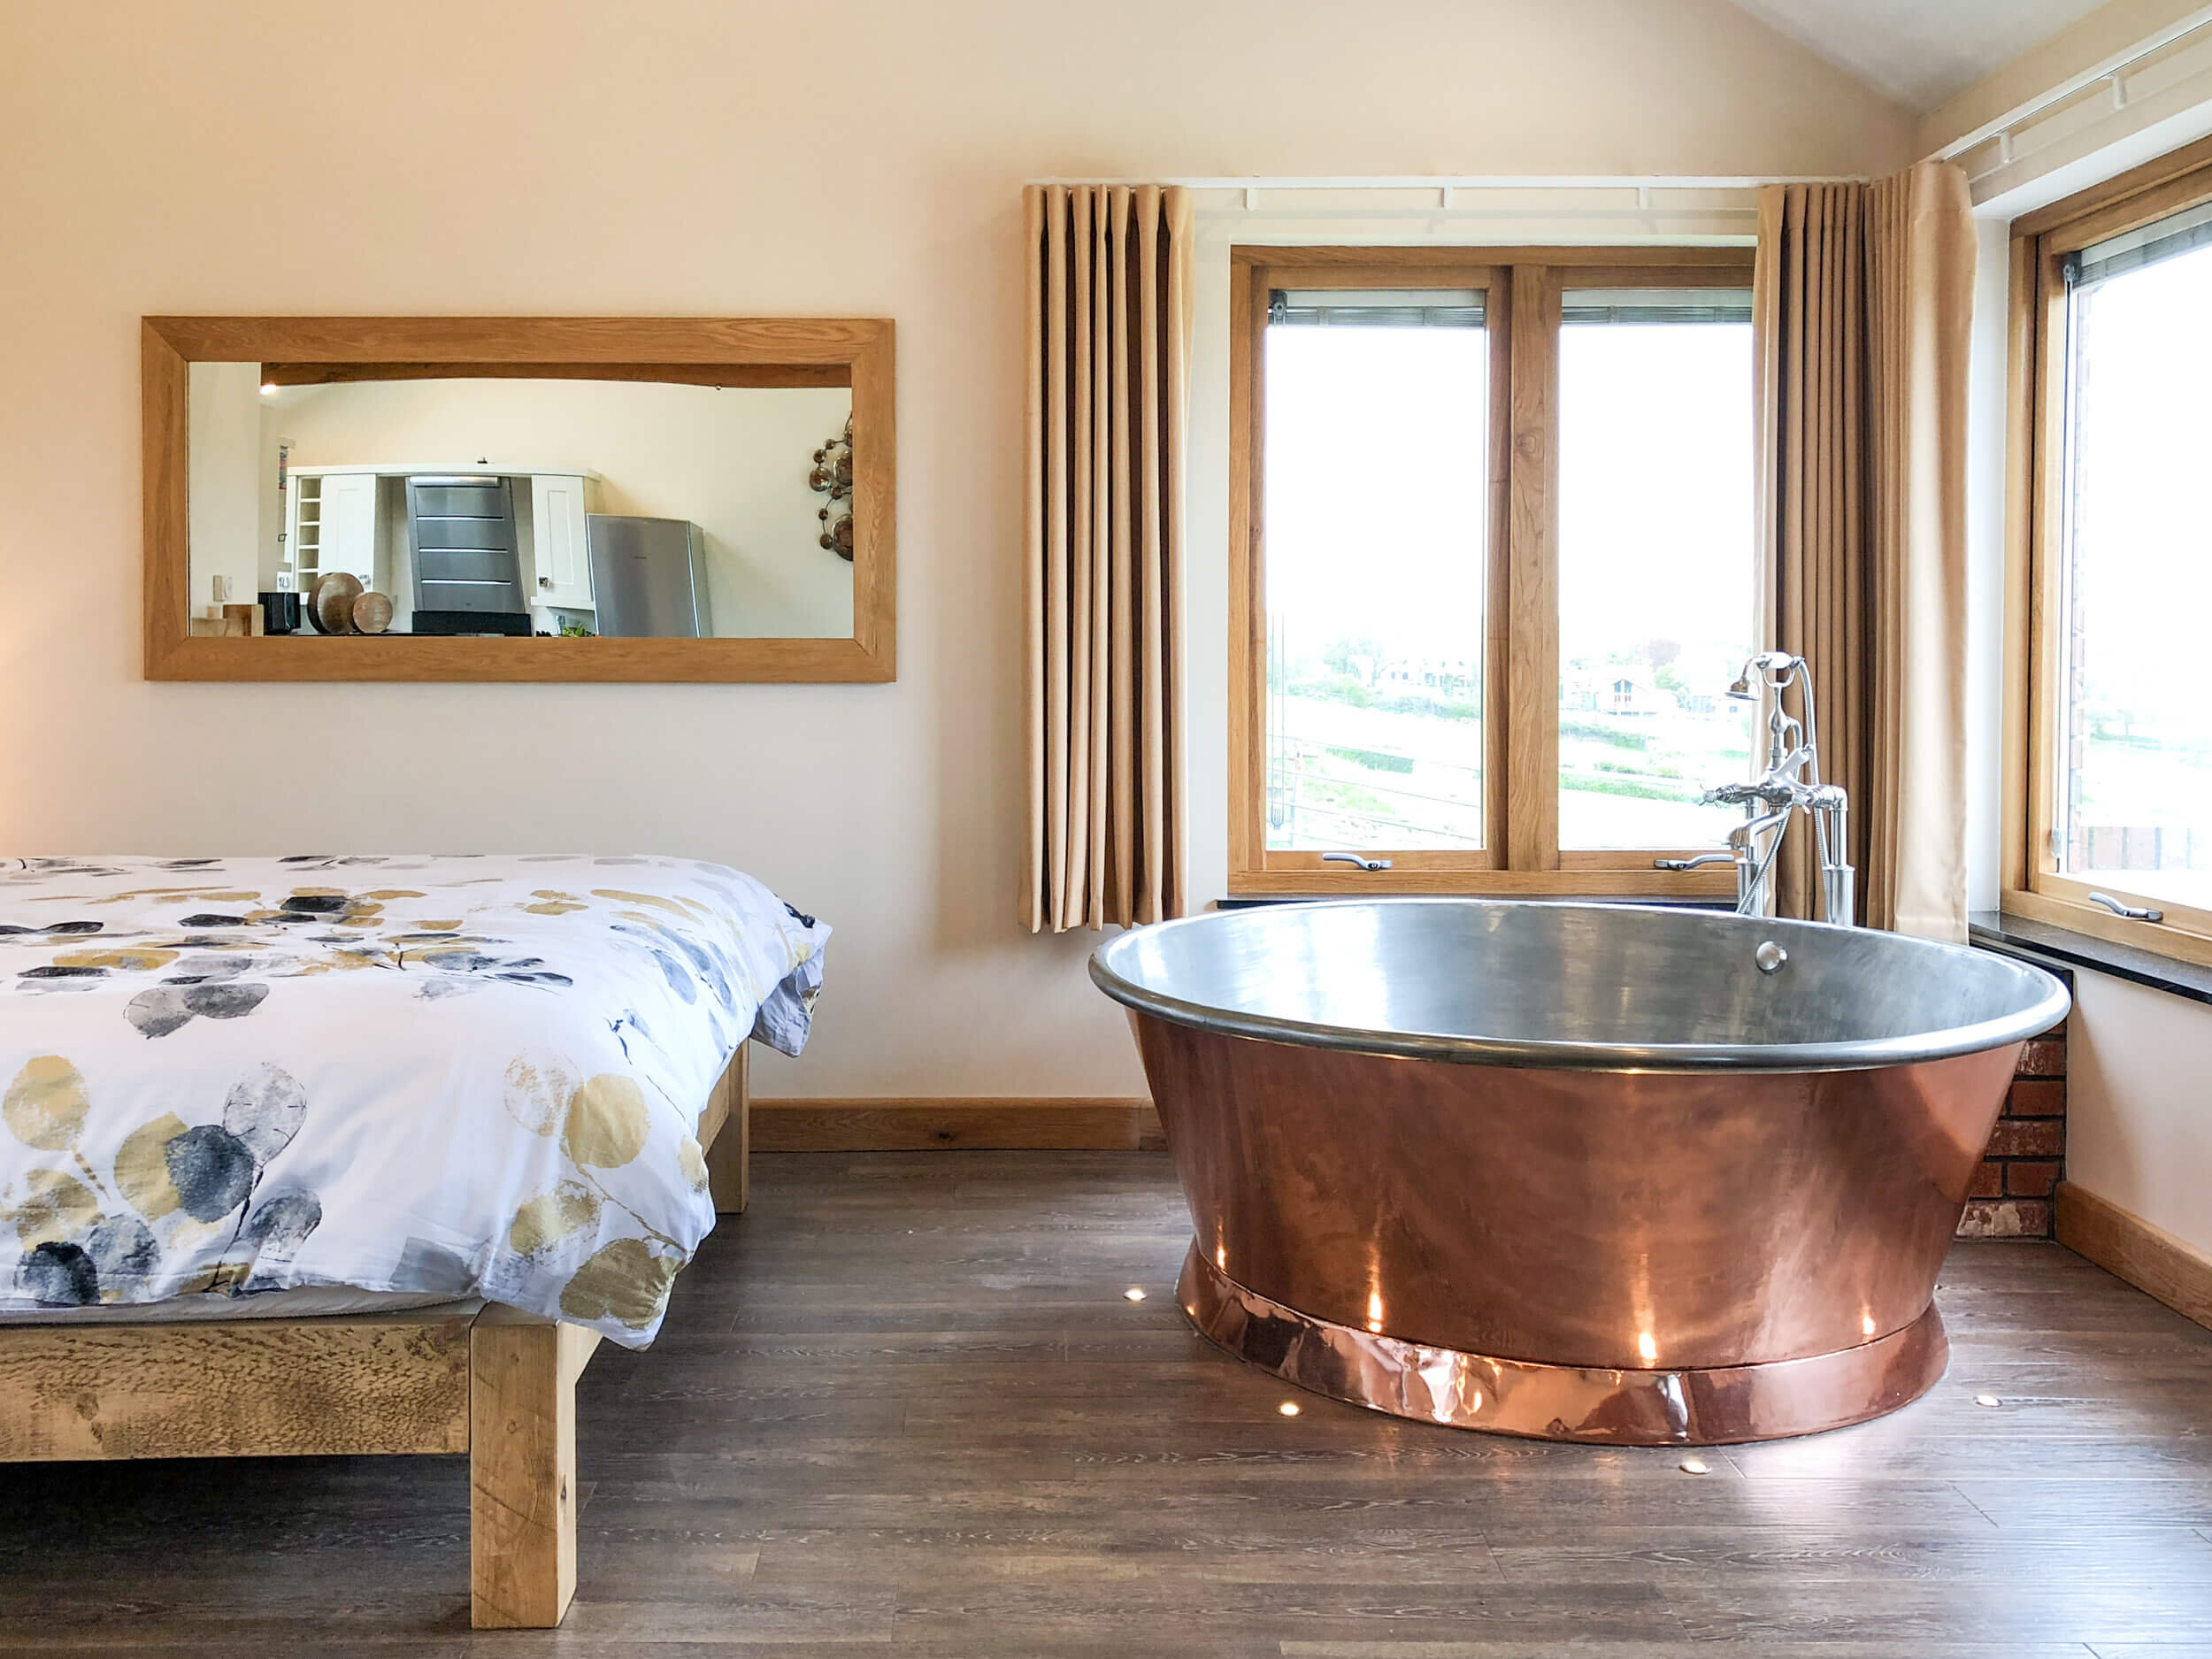 Round copper air-spa bath